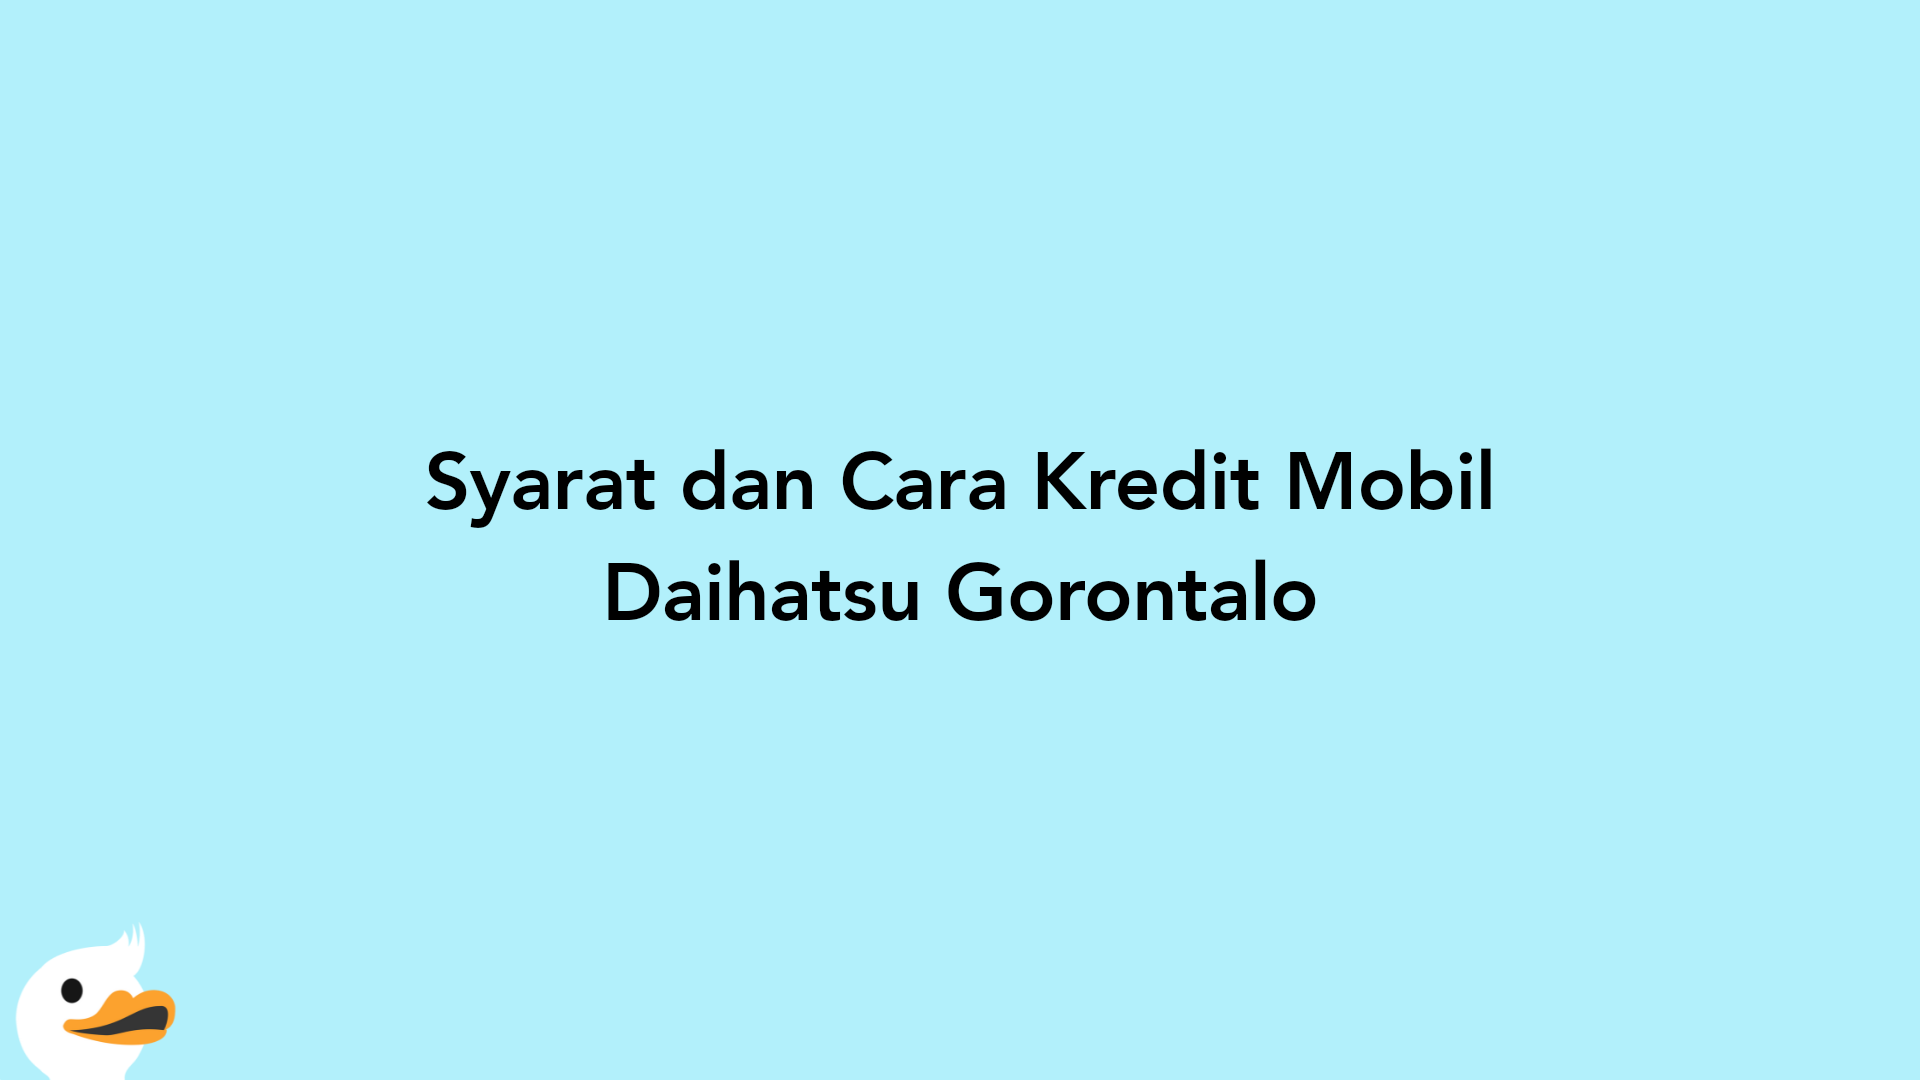 Syarat dan Cara Kredit Mobil Daihatsu Gorontalo